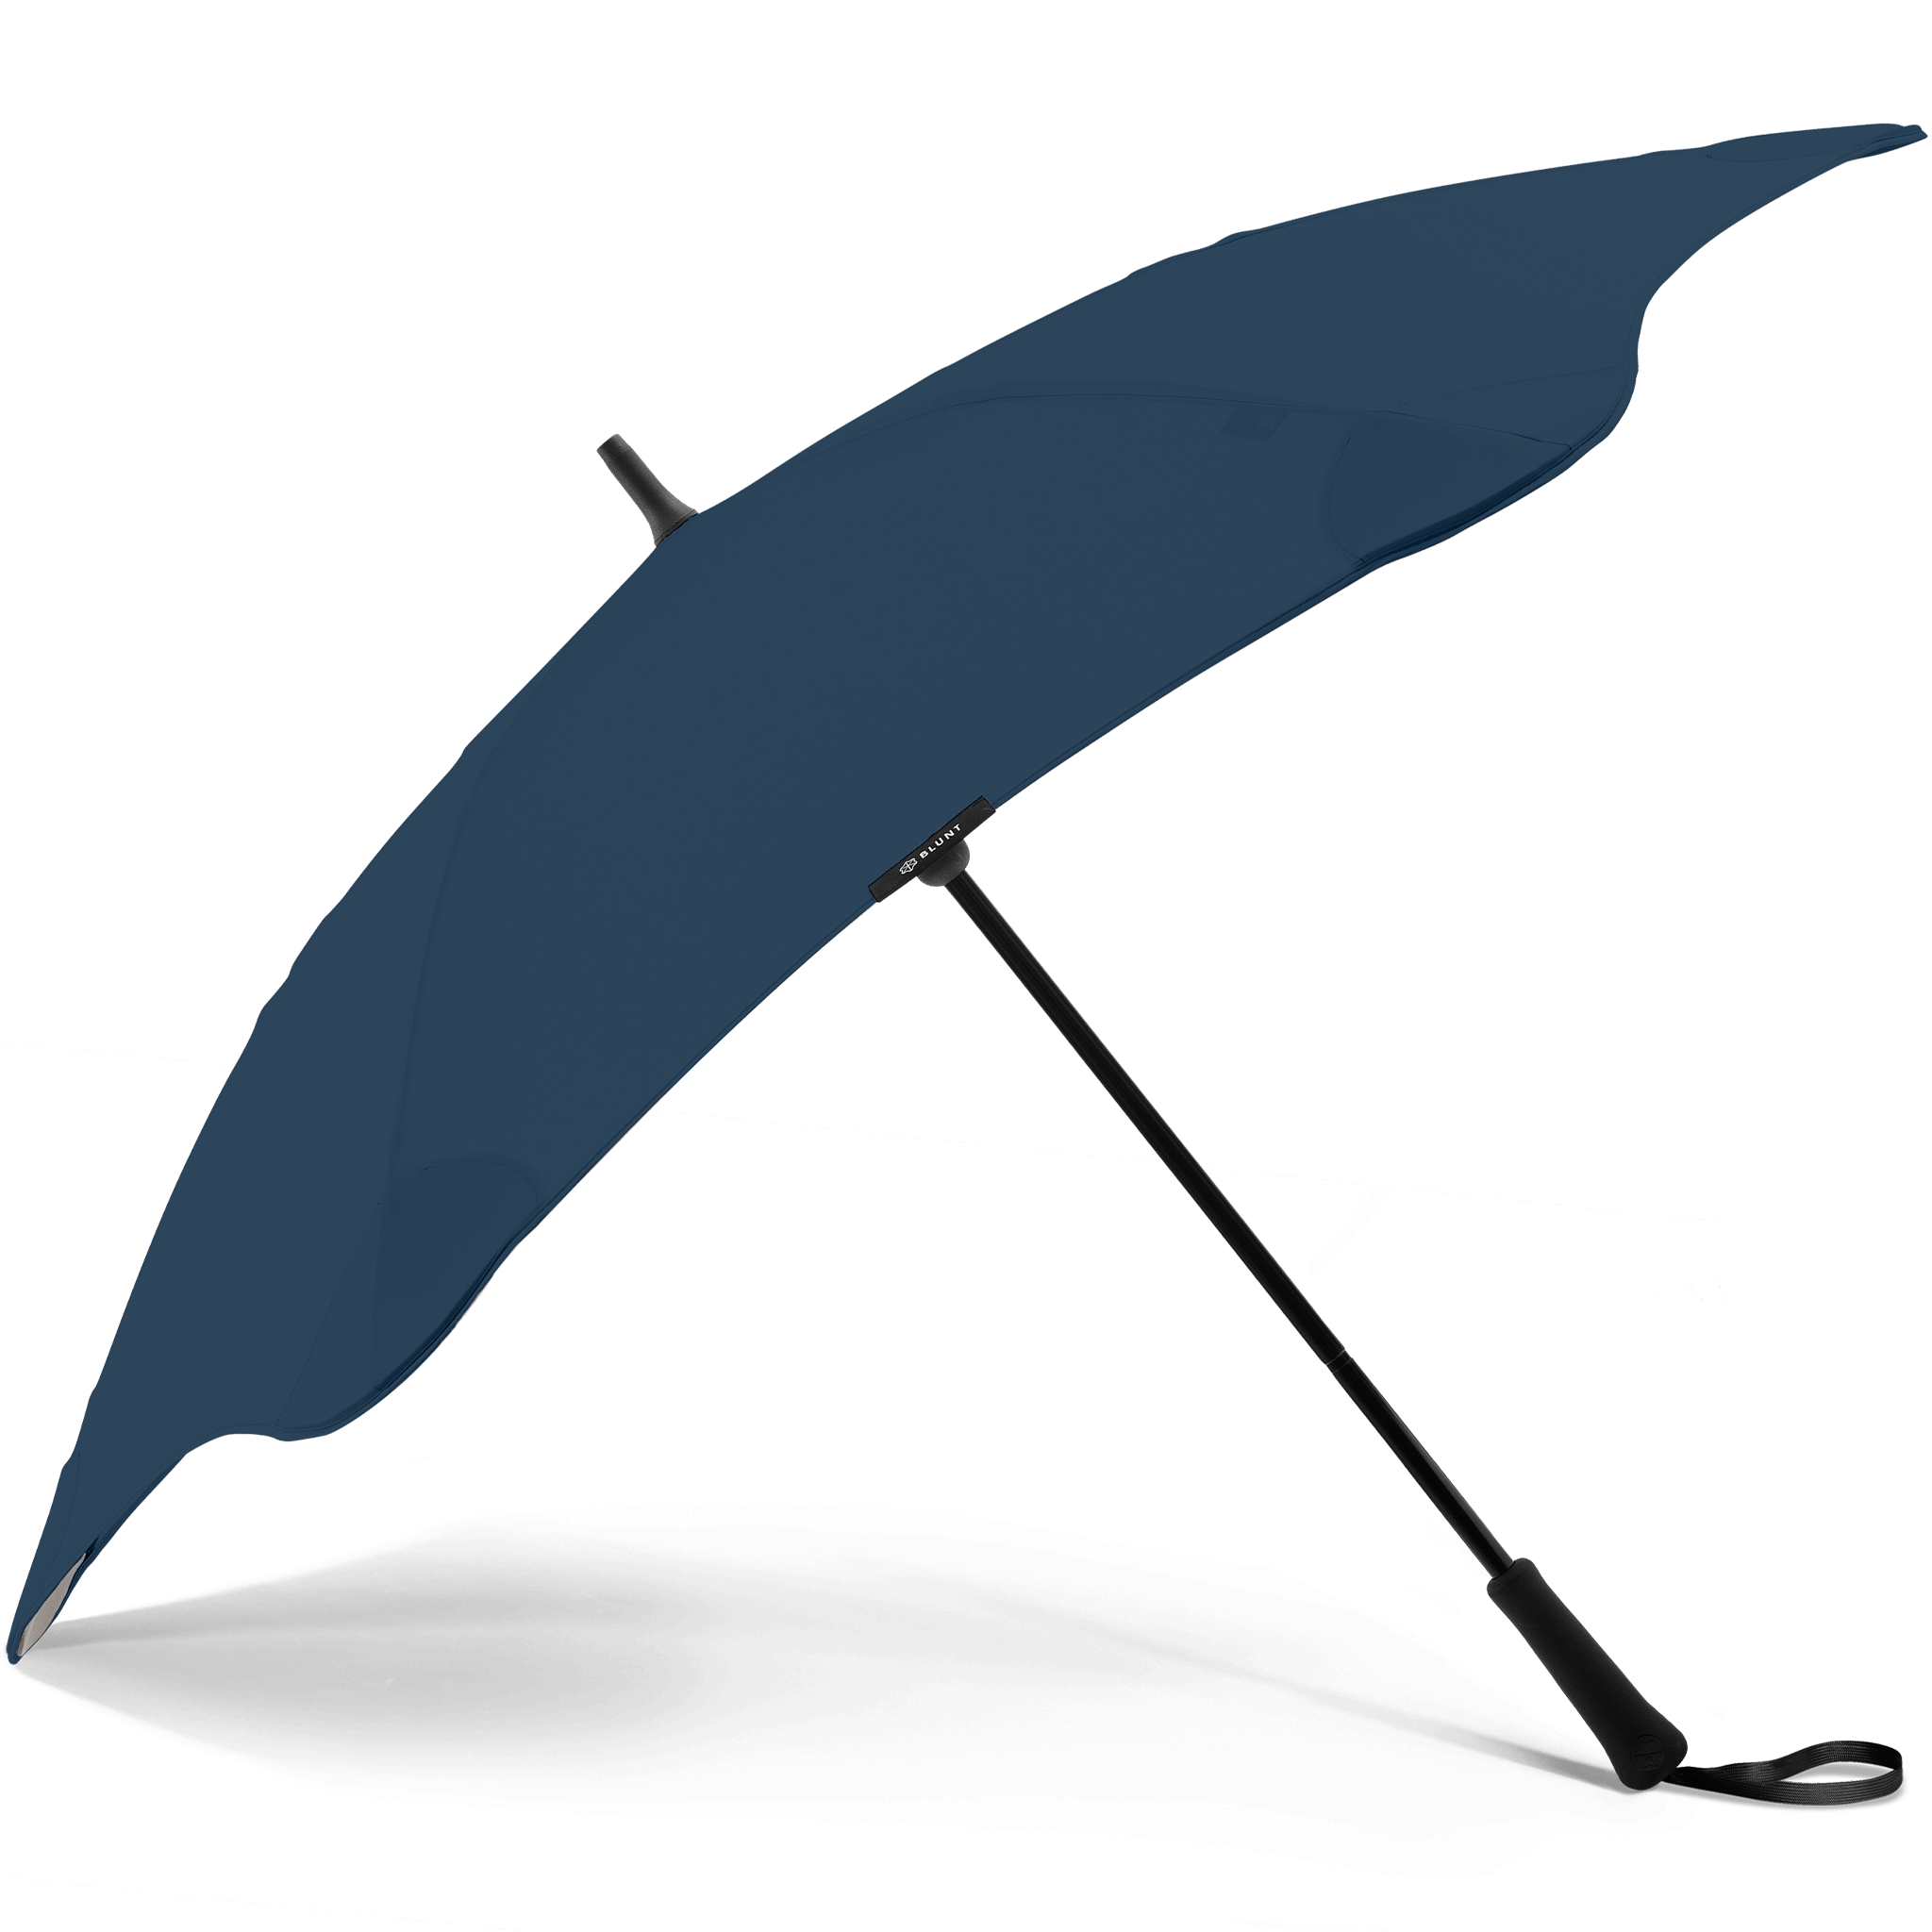 Blunt Umbrellas Classic stick umbrella